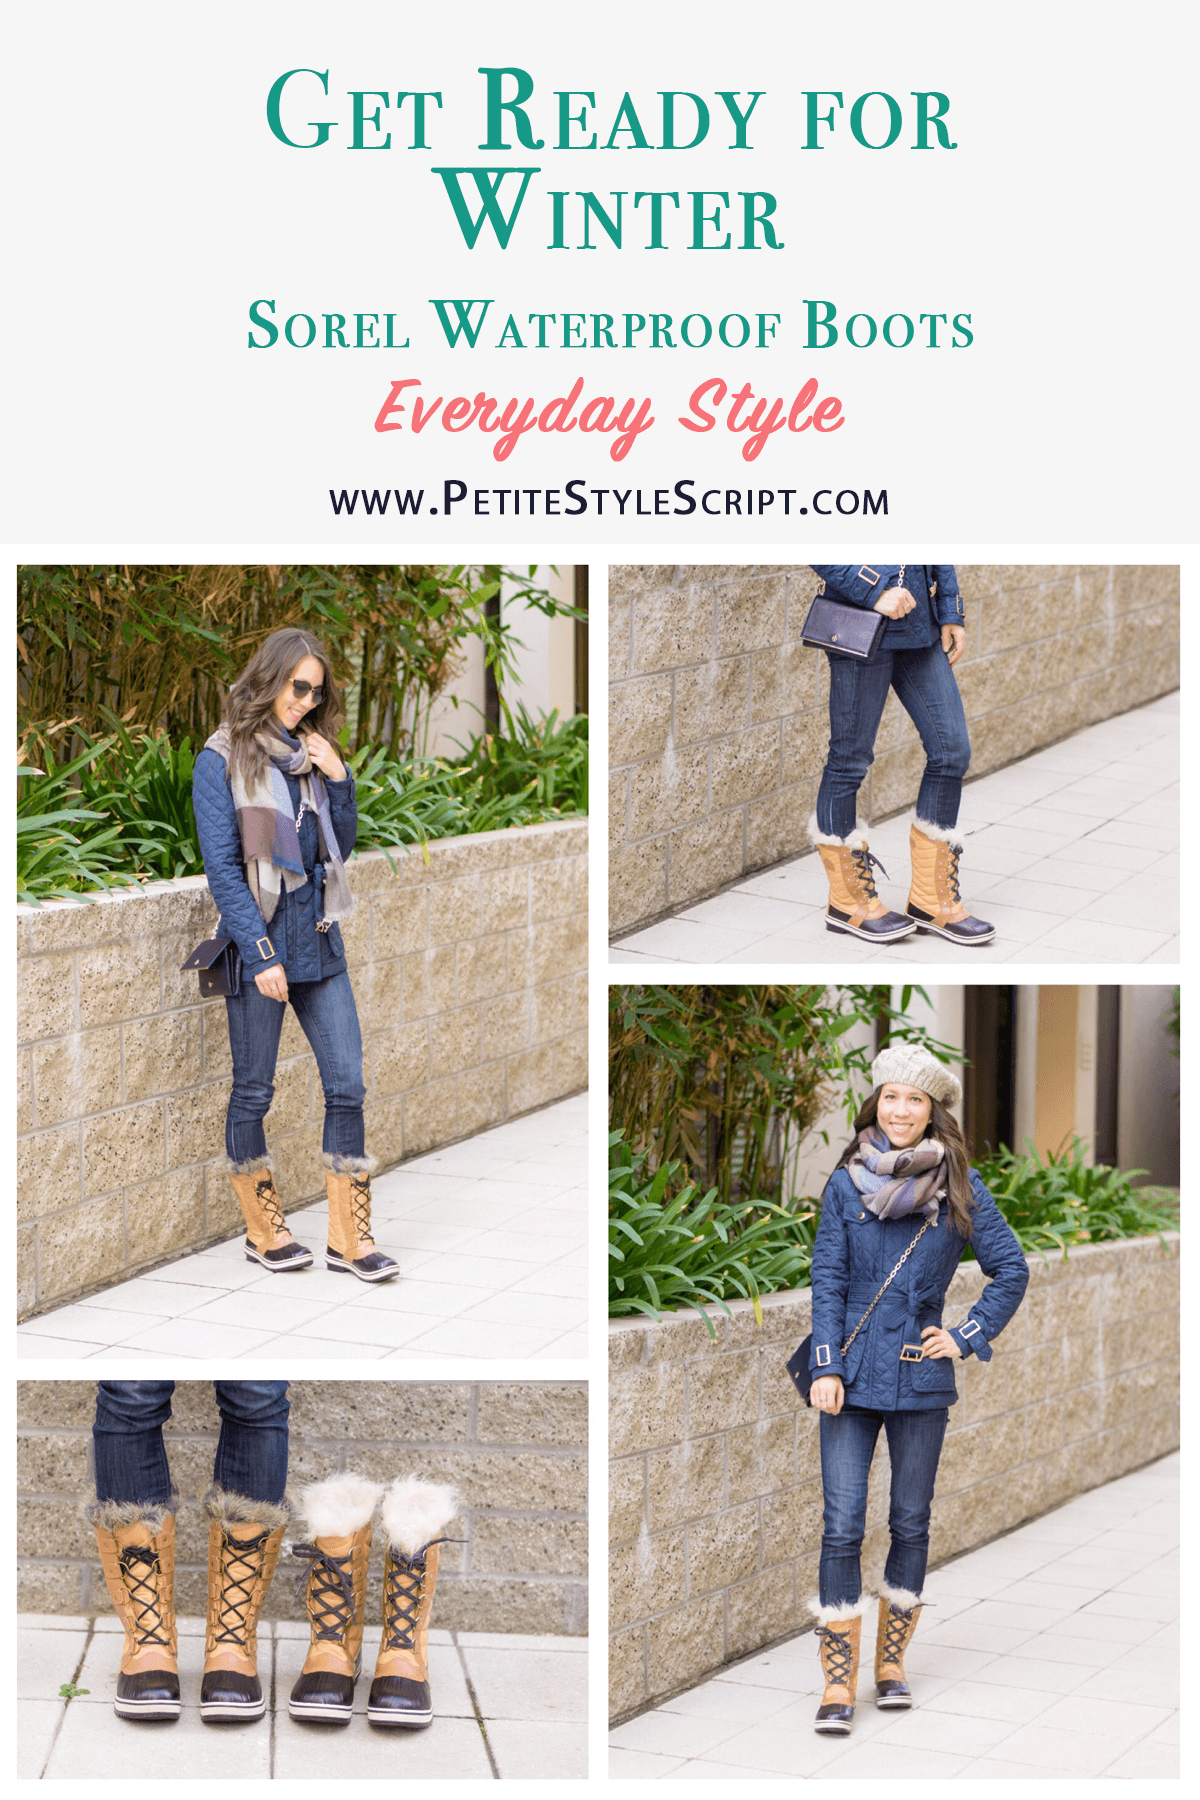 Sorel Waterproof Boots Review